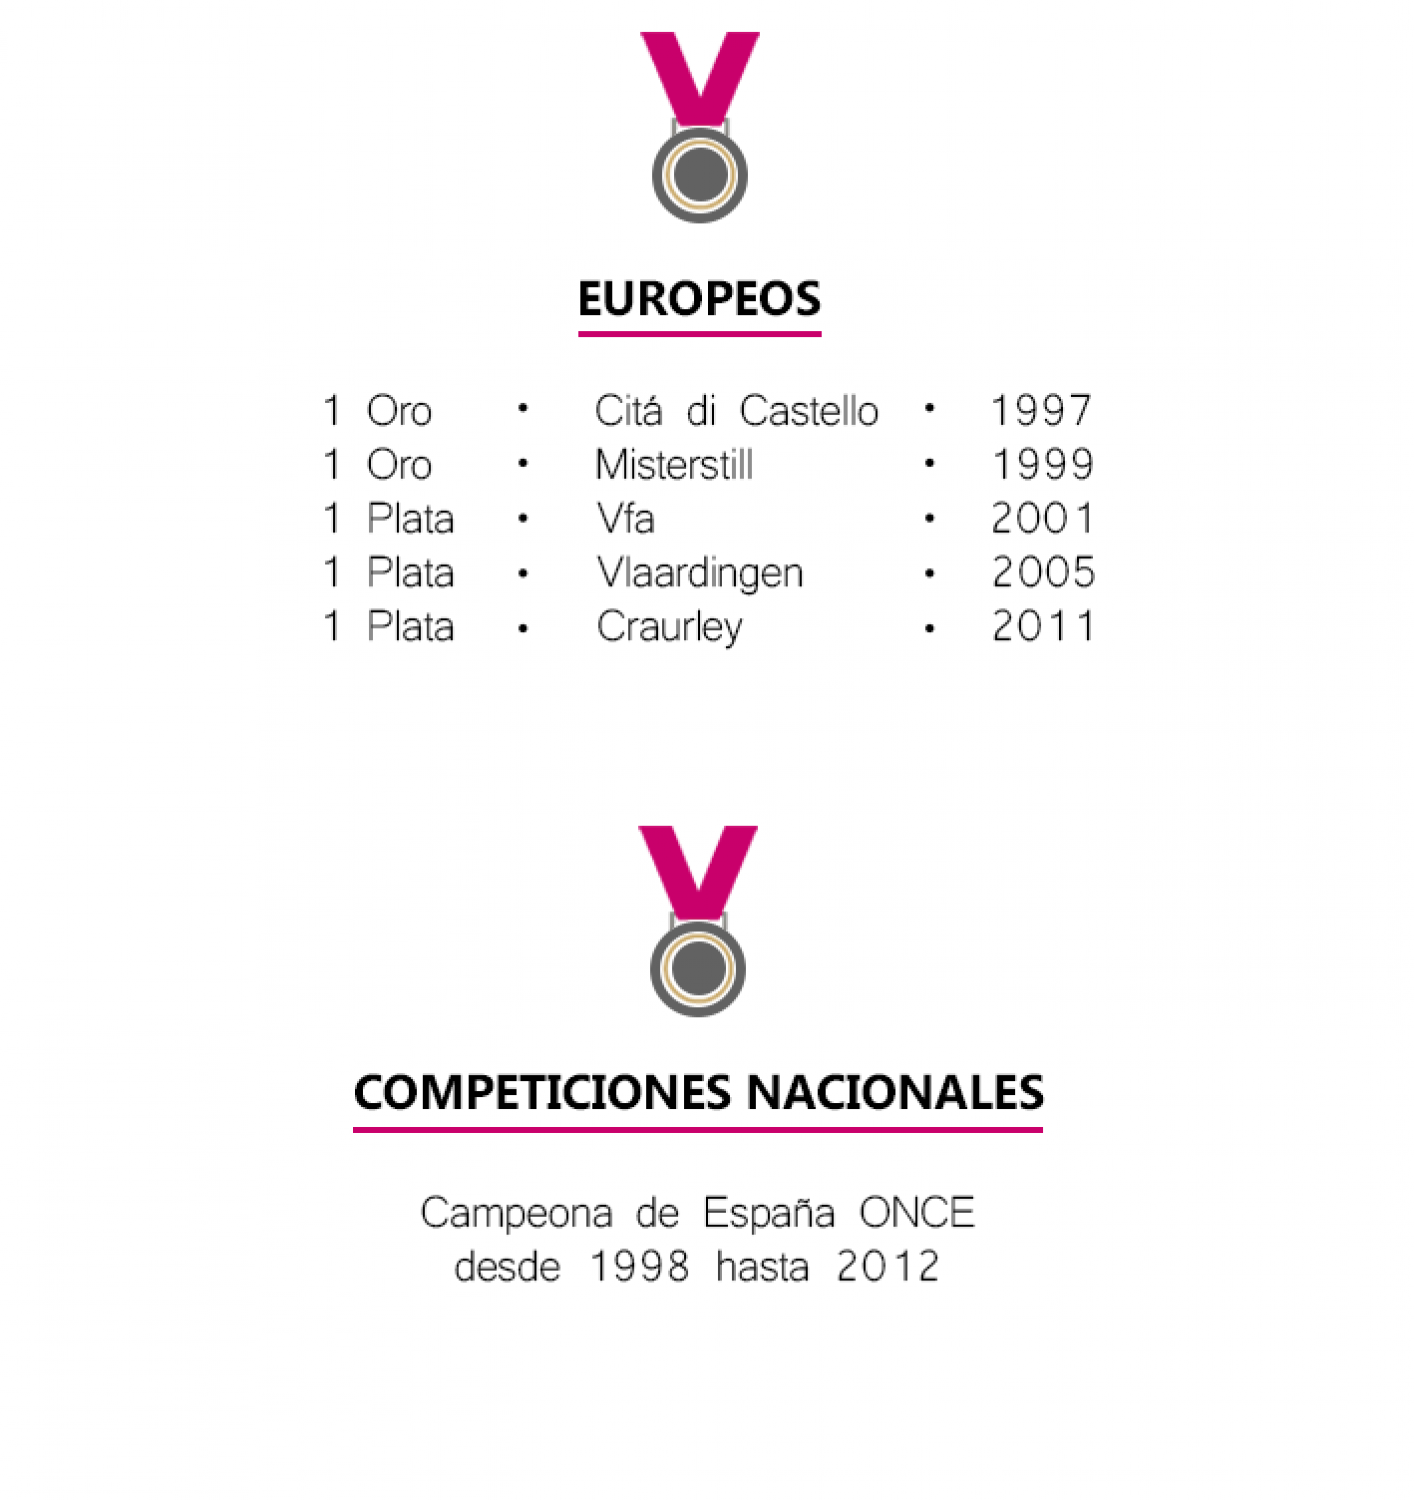 EUROPEOS
1 Oro       Citá di Castello     1997
1 Oro       Misterstill          1999
1 Plata      Vfa               2001
1 Plata      Vlaardingen        2005
1 Plata      Craurley          2011
COMPETICIONES NACIONALES
Campeona de España ONCE desde 1998 hasta 2012